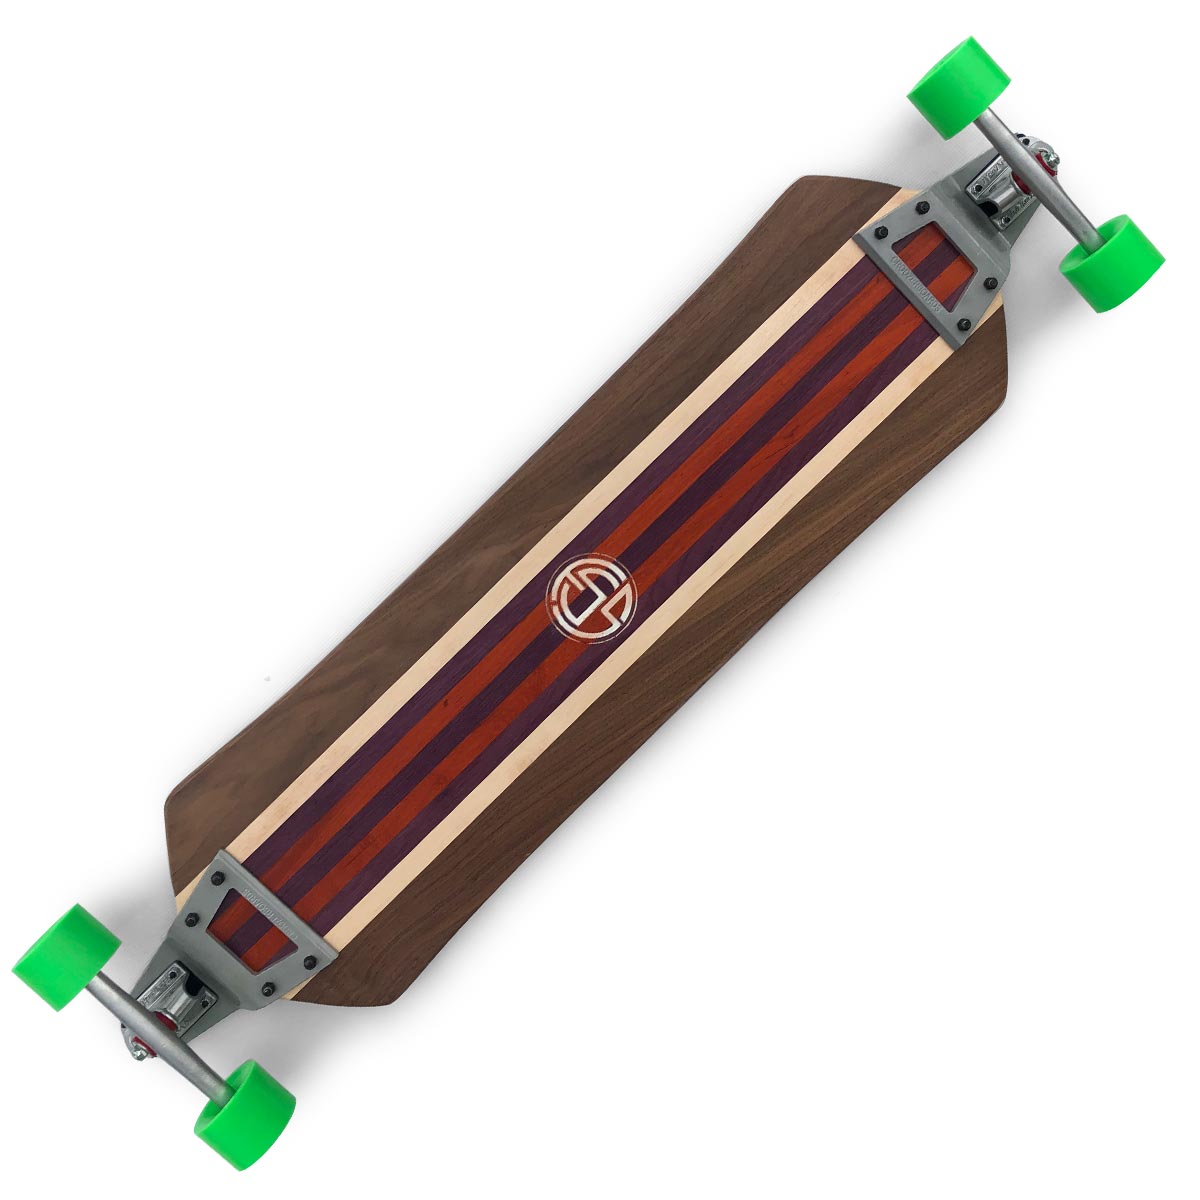 New Titan FSS handcrafted Skateboard 44 in